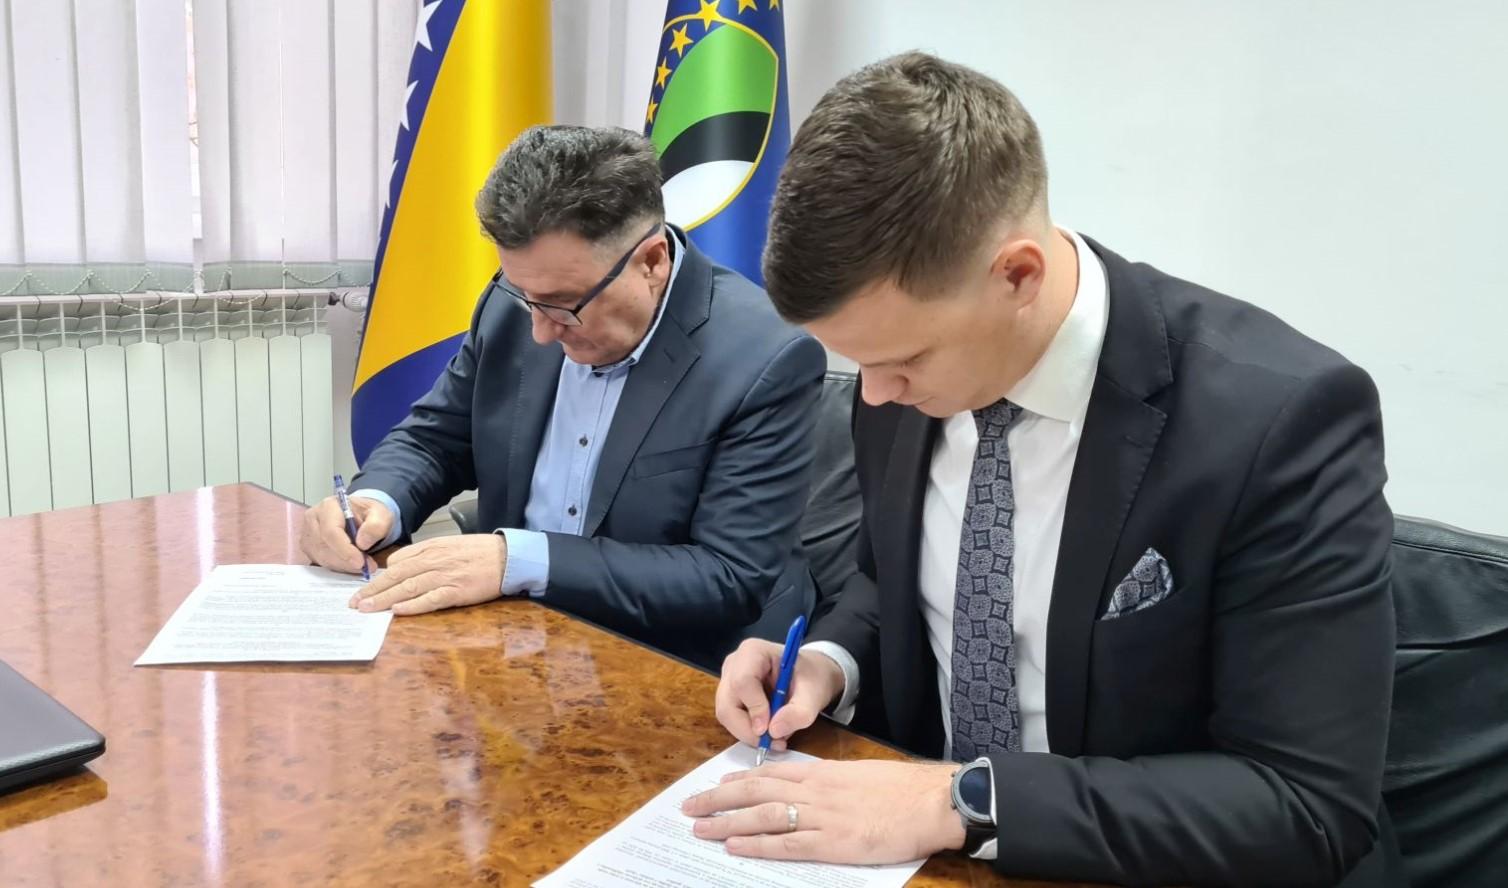 Premijer TK Irfan Halilagić potpisao povećanje plaće budžetskim korisnicima